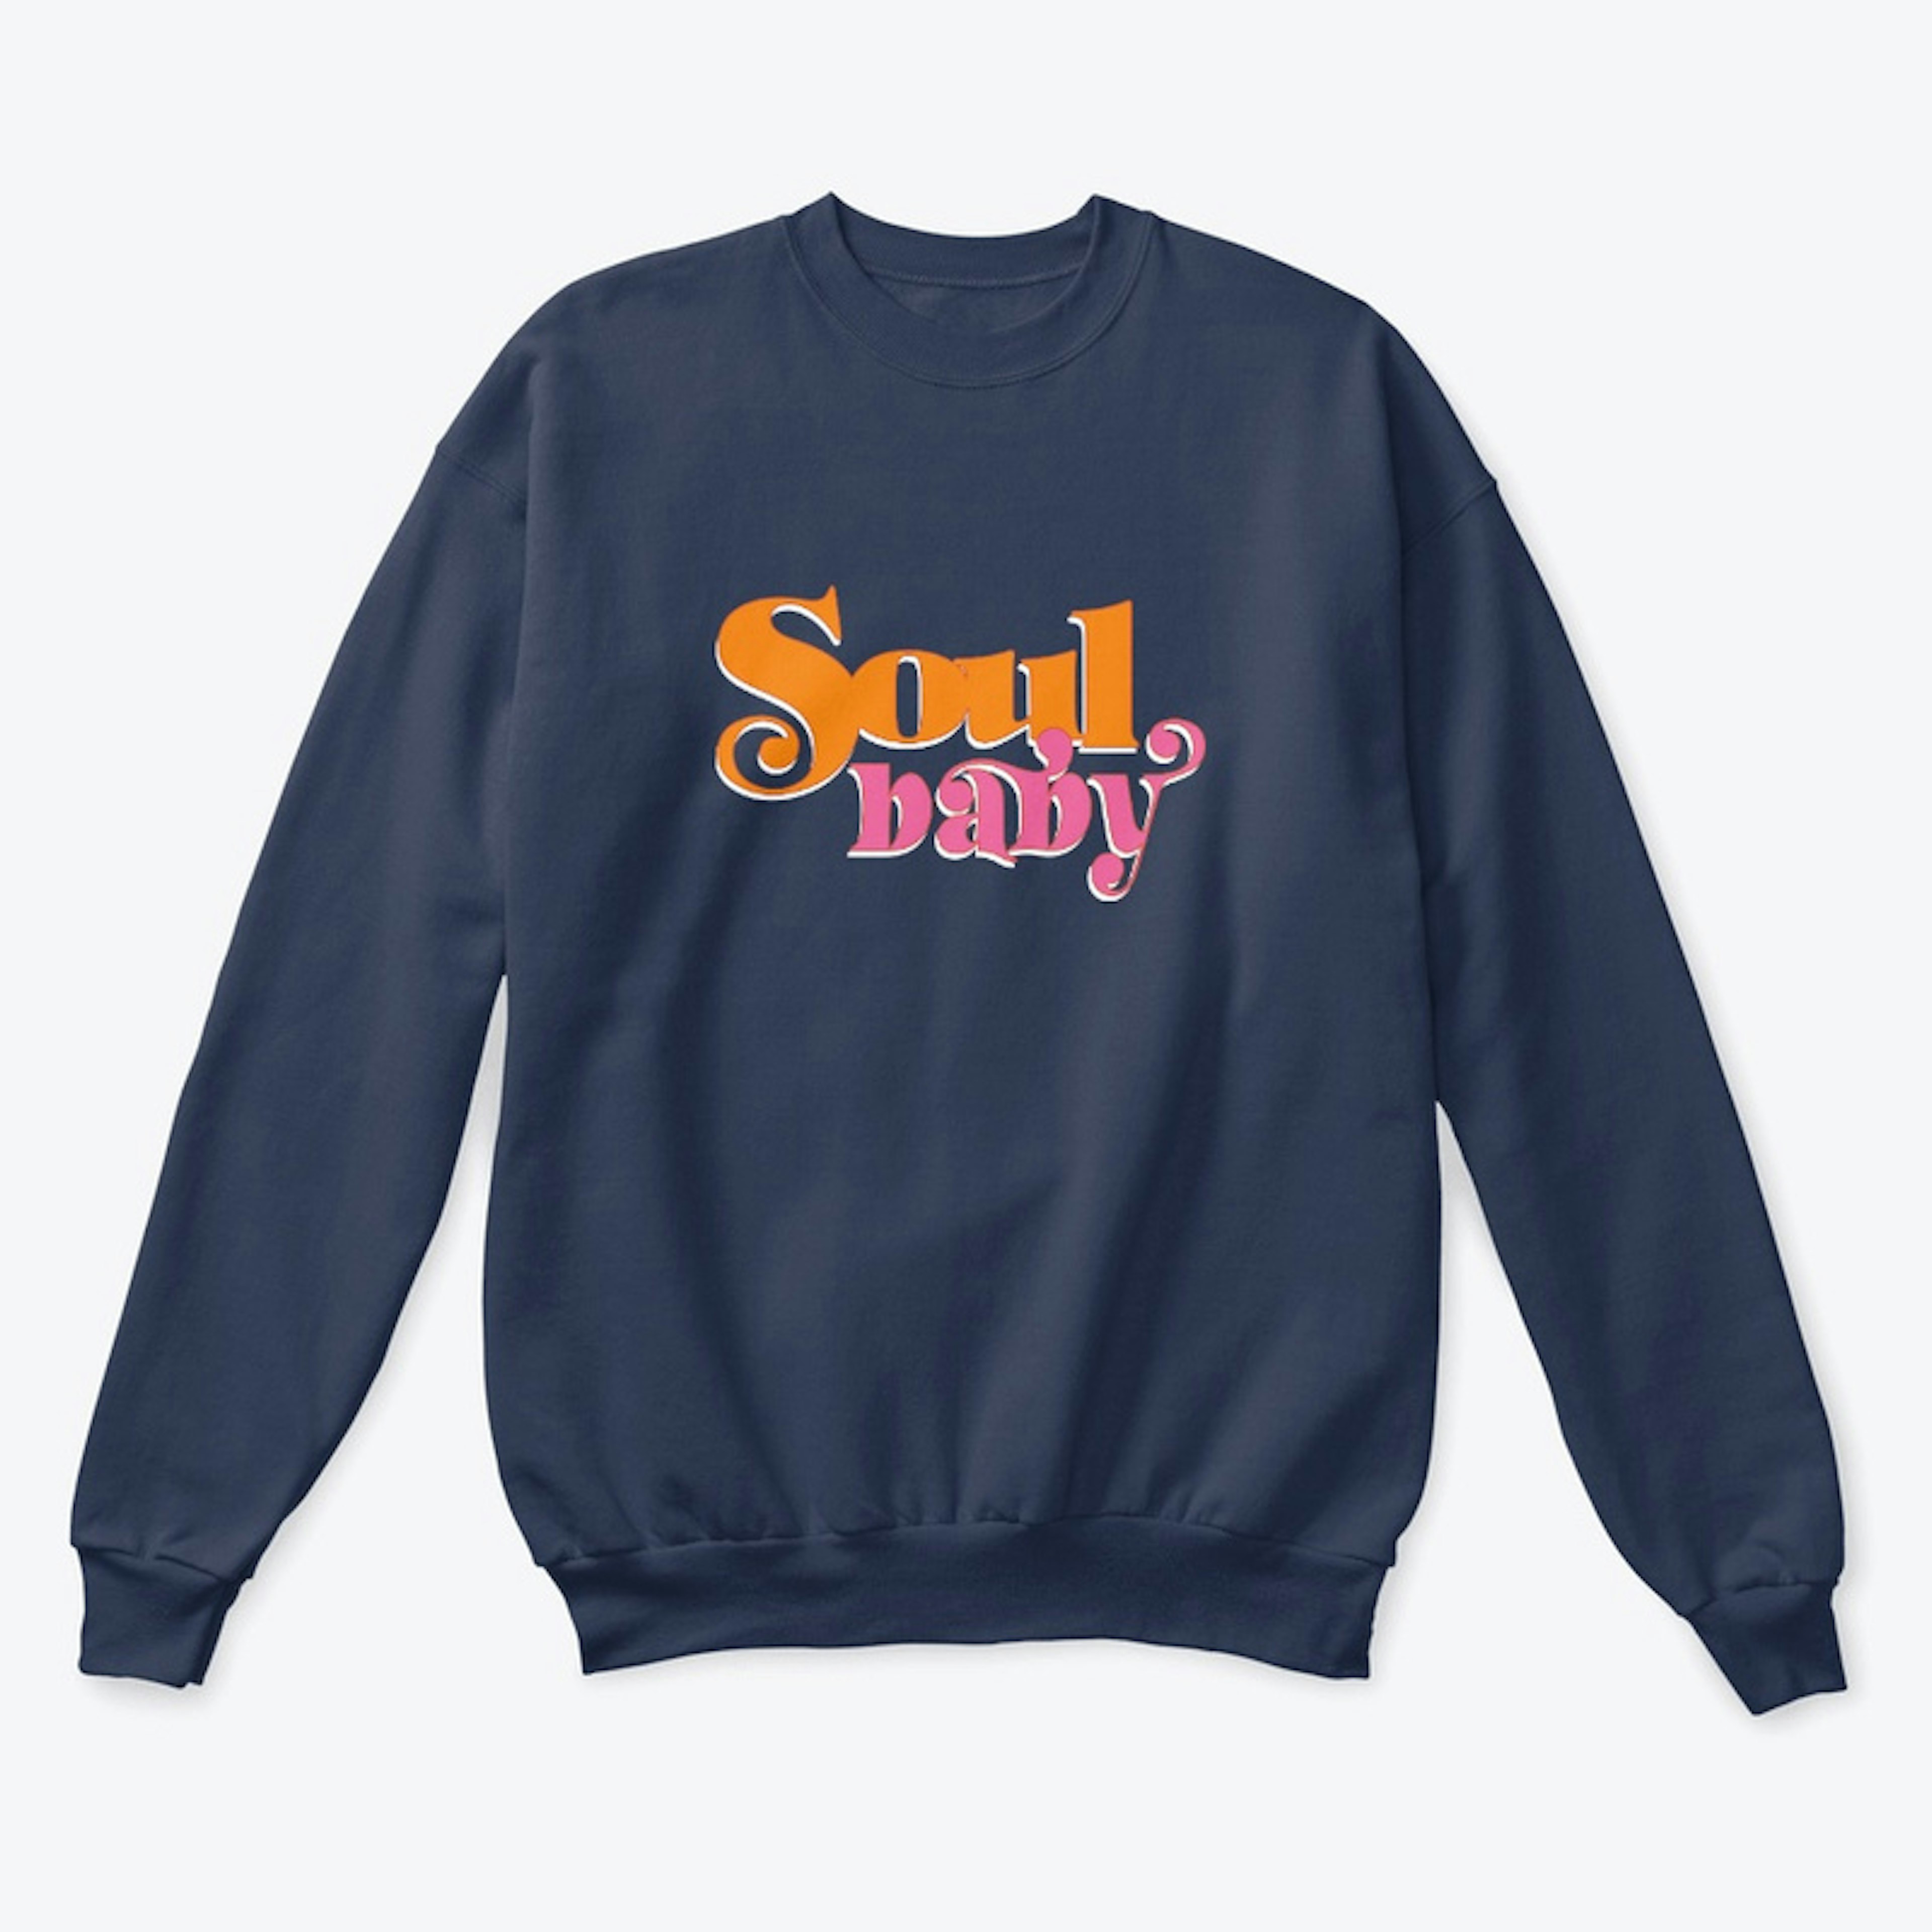 SPECIAL EDITION Soul Baby Sweatshirt